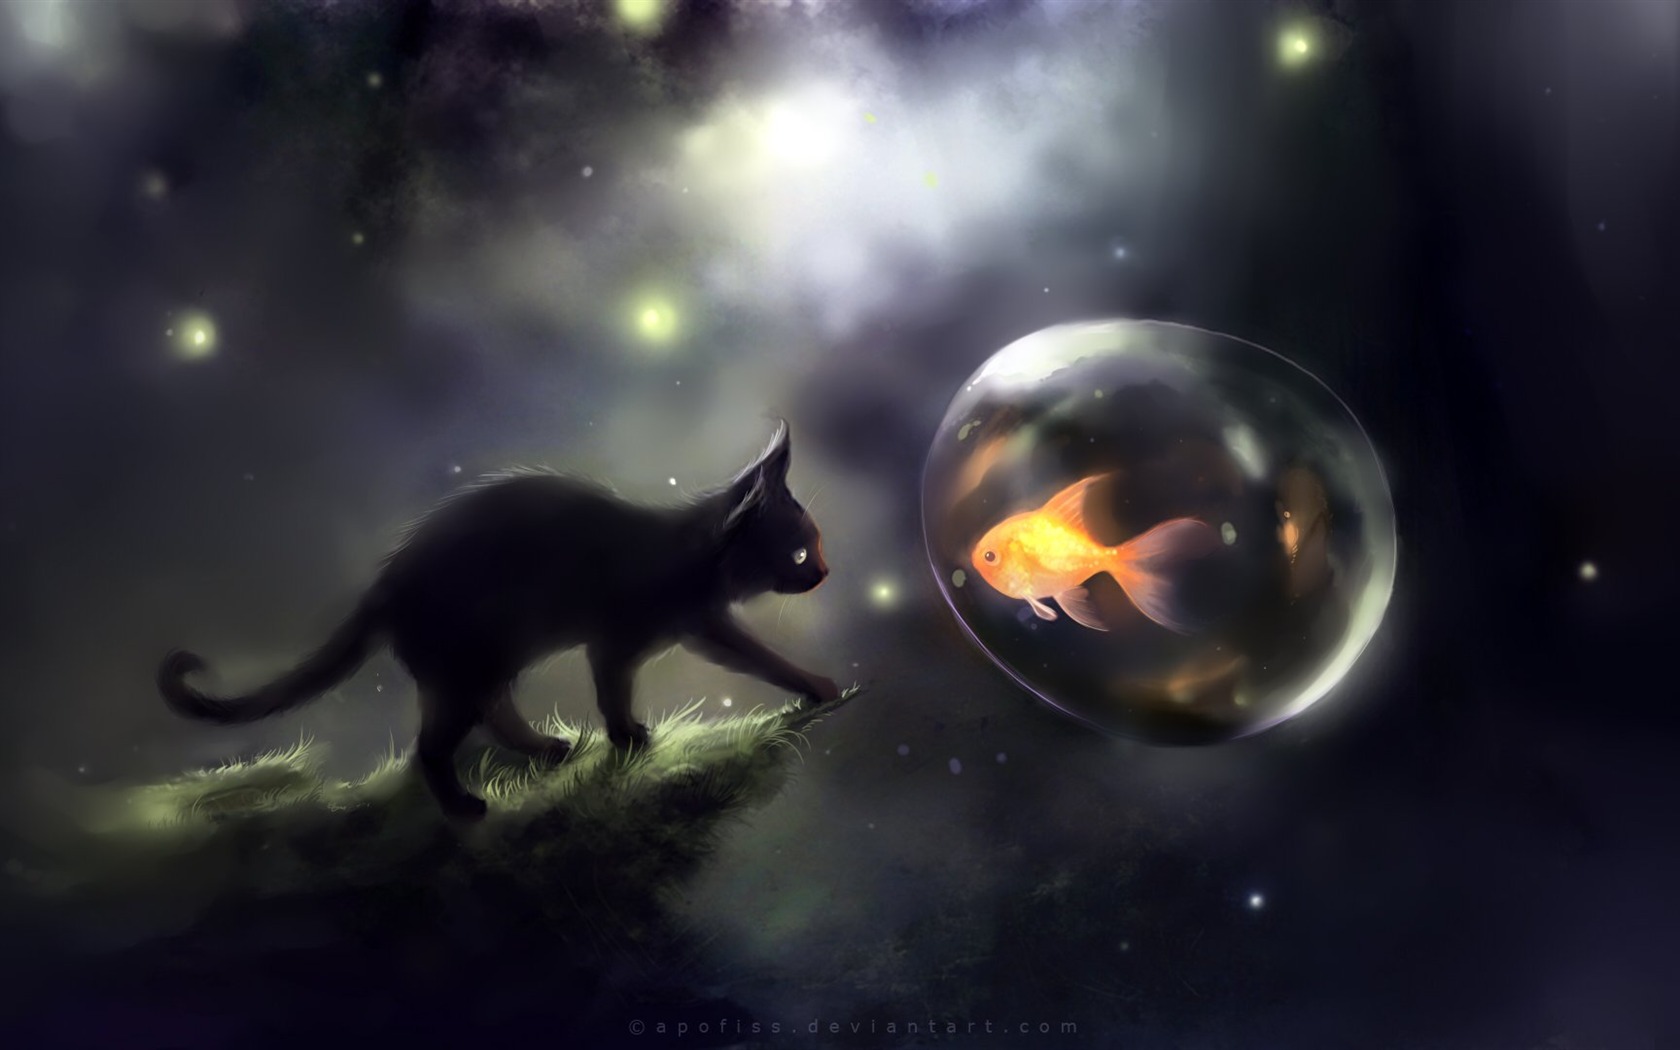 Apofiss 작은 검은 고양이 벽지 수채화 삽화 #1 - 1680x1050